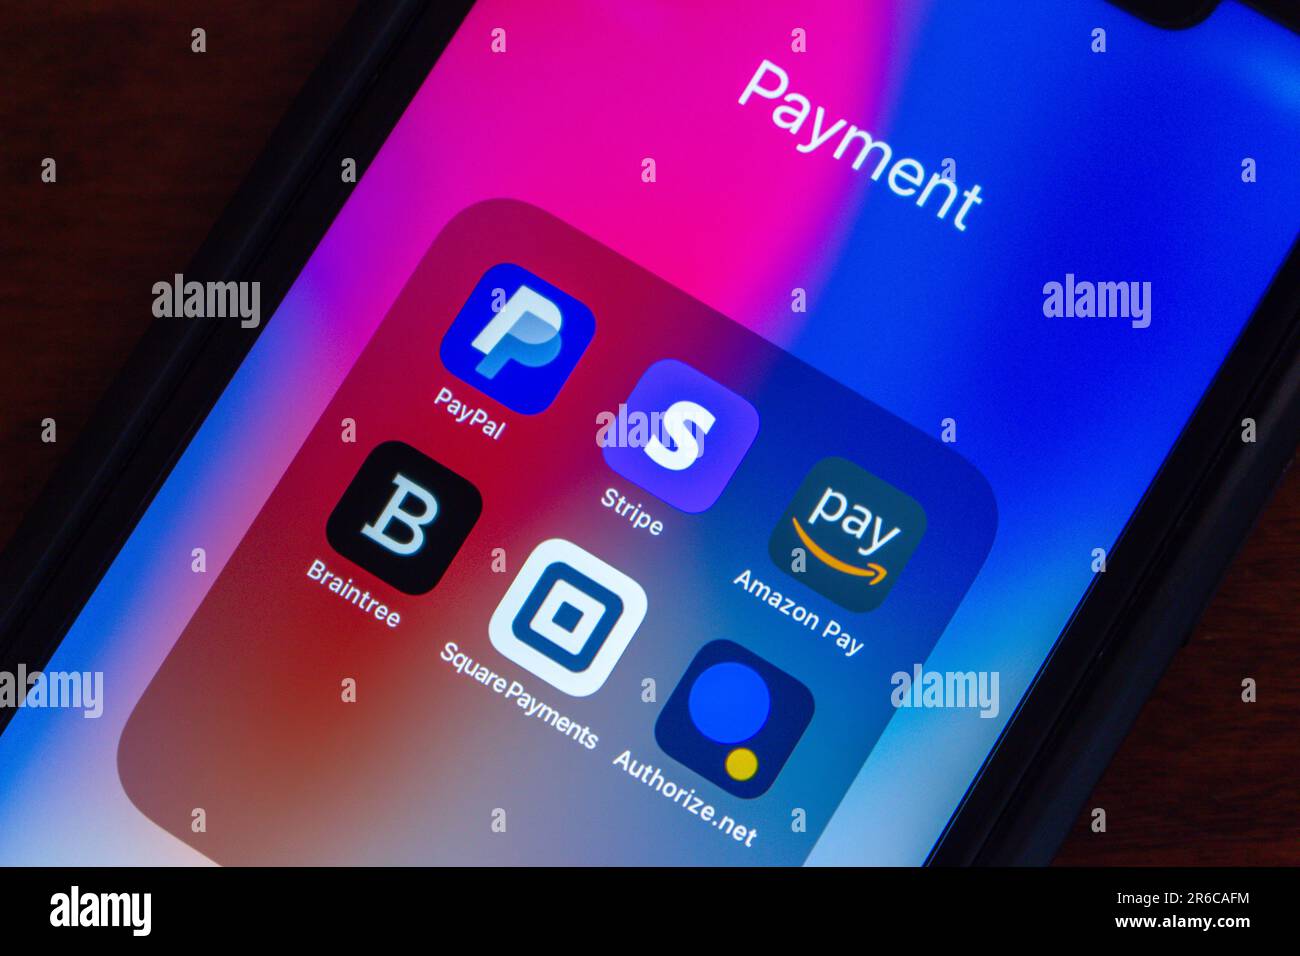 PayPal, Stripe Dashboard, Amazon Pay, Braintree, Square Payments e Authorize.net icone visualizzate su iPhone. Il concetto di piattaforme di pagamento e pagamento più diffuso Foto Stock